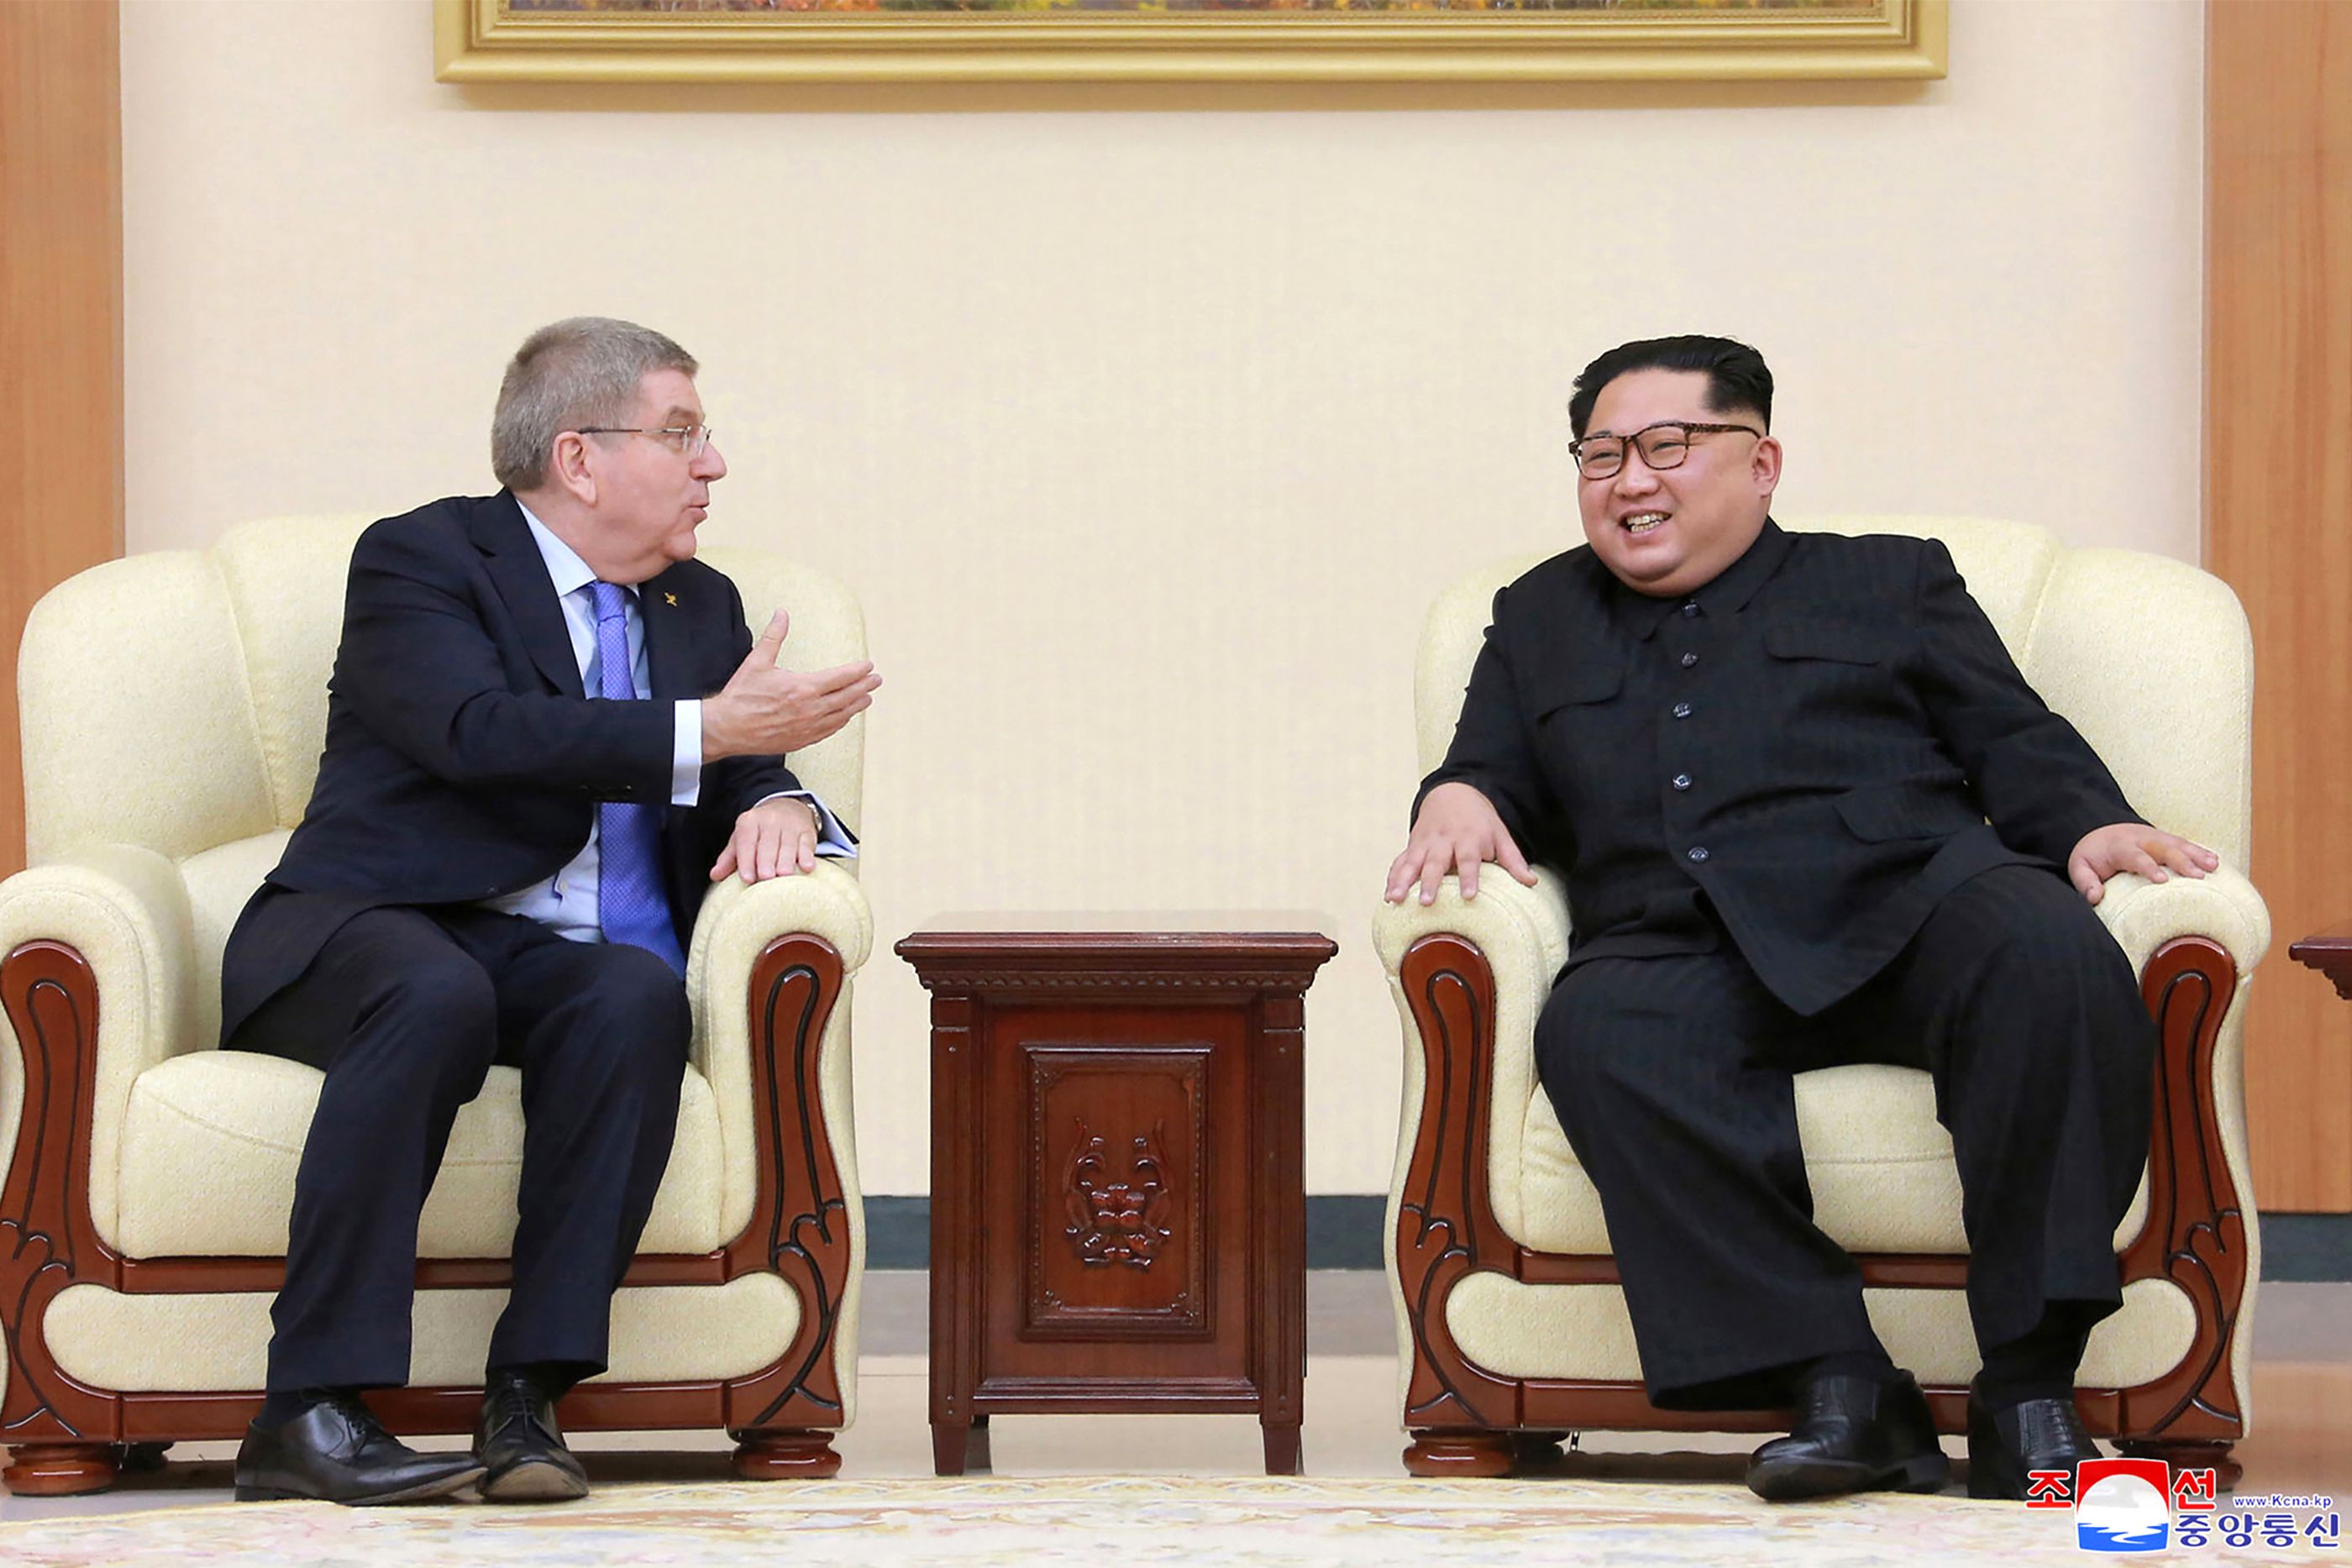 زعيم كوريا الشمالية مع توماس باخ